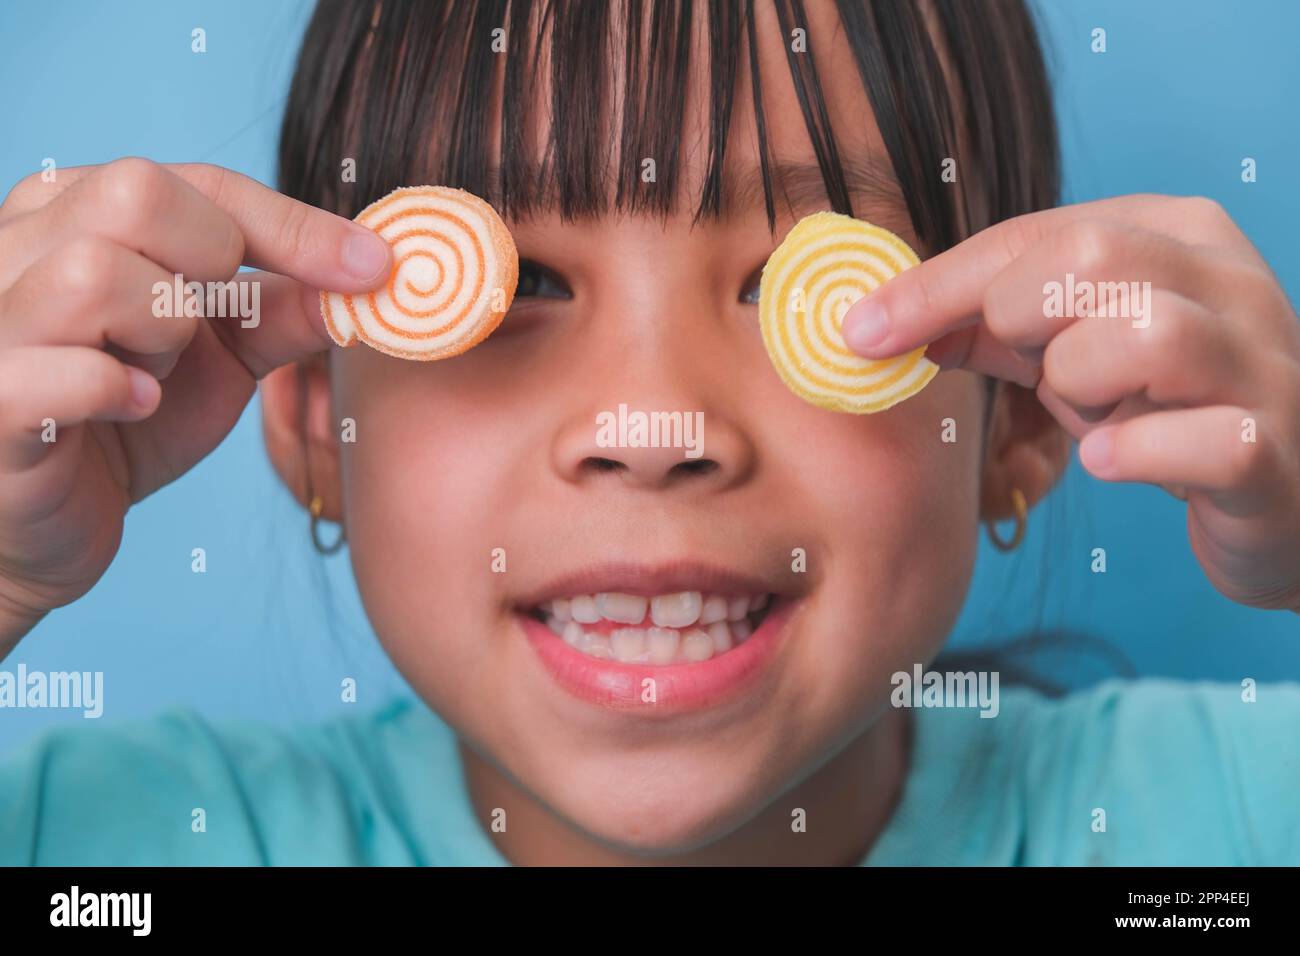 Lächelndes, süßes Mädchen, das seine Augen mit zwei Gelatinesüßen auf blauem Hintergrund bedeckte. Kinder essen zuckerhaltige Süßigkeiten, die Zahnverluste verursachen oder Stockfoto